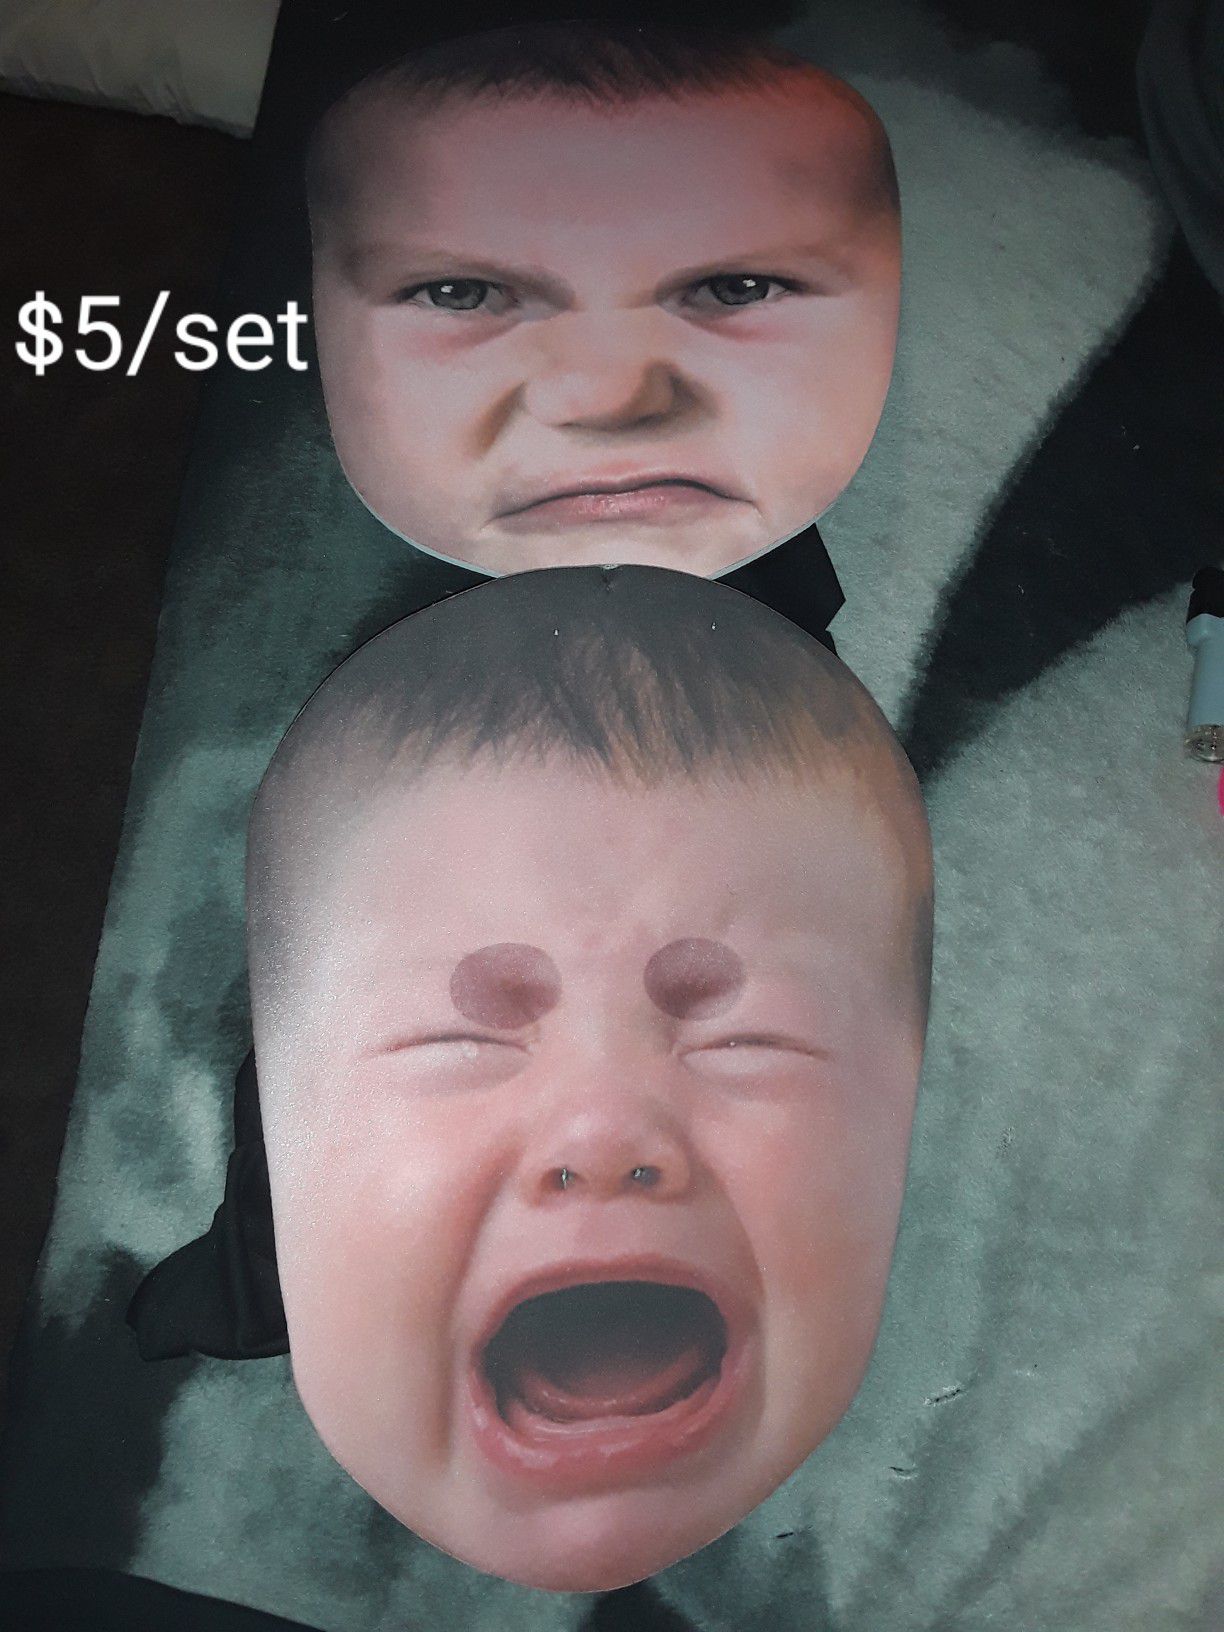 Large baby masks